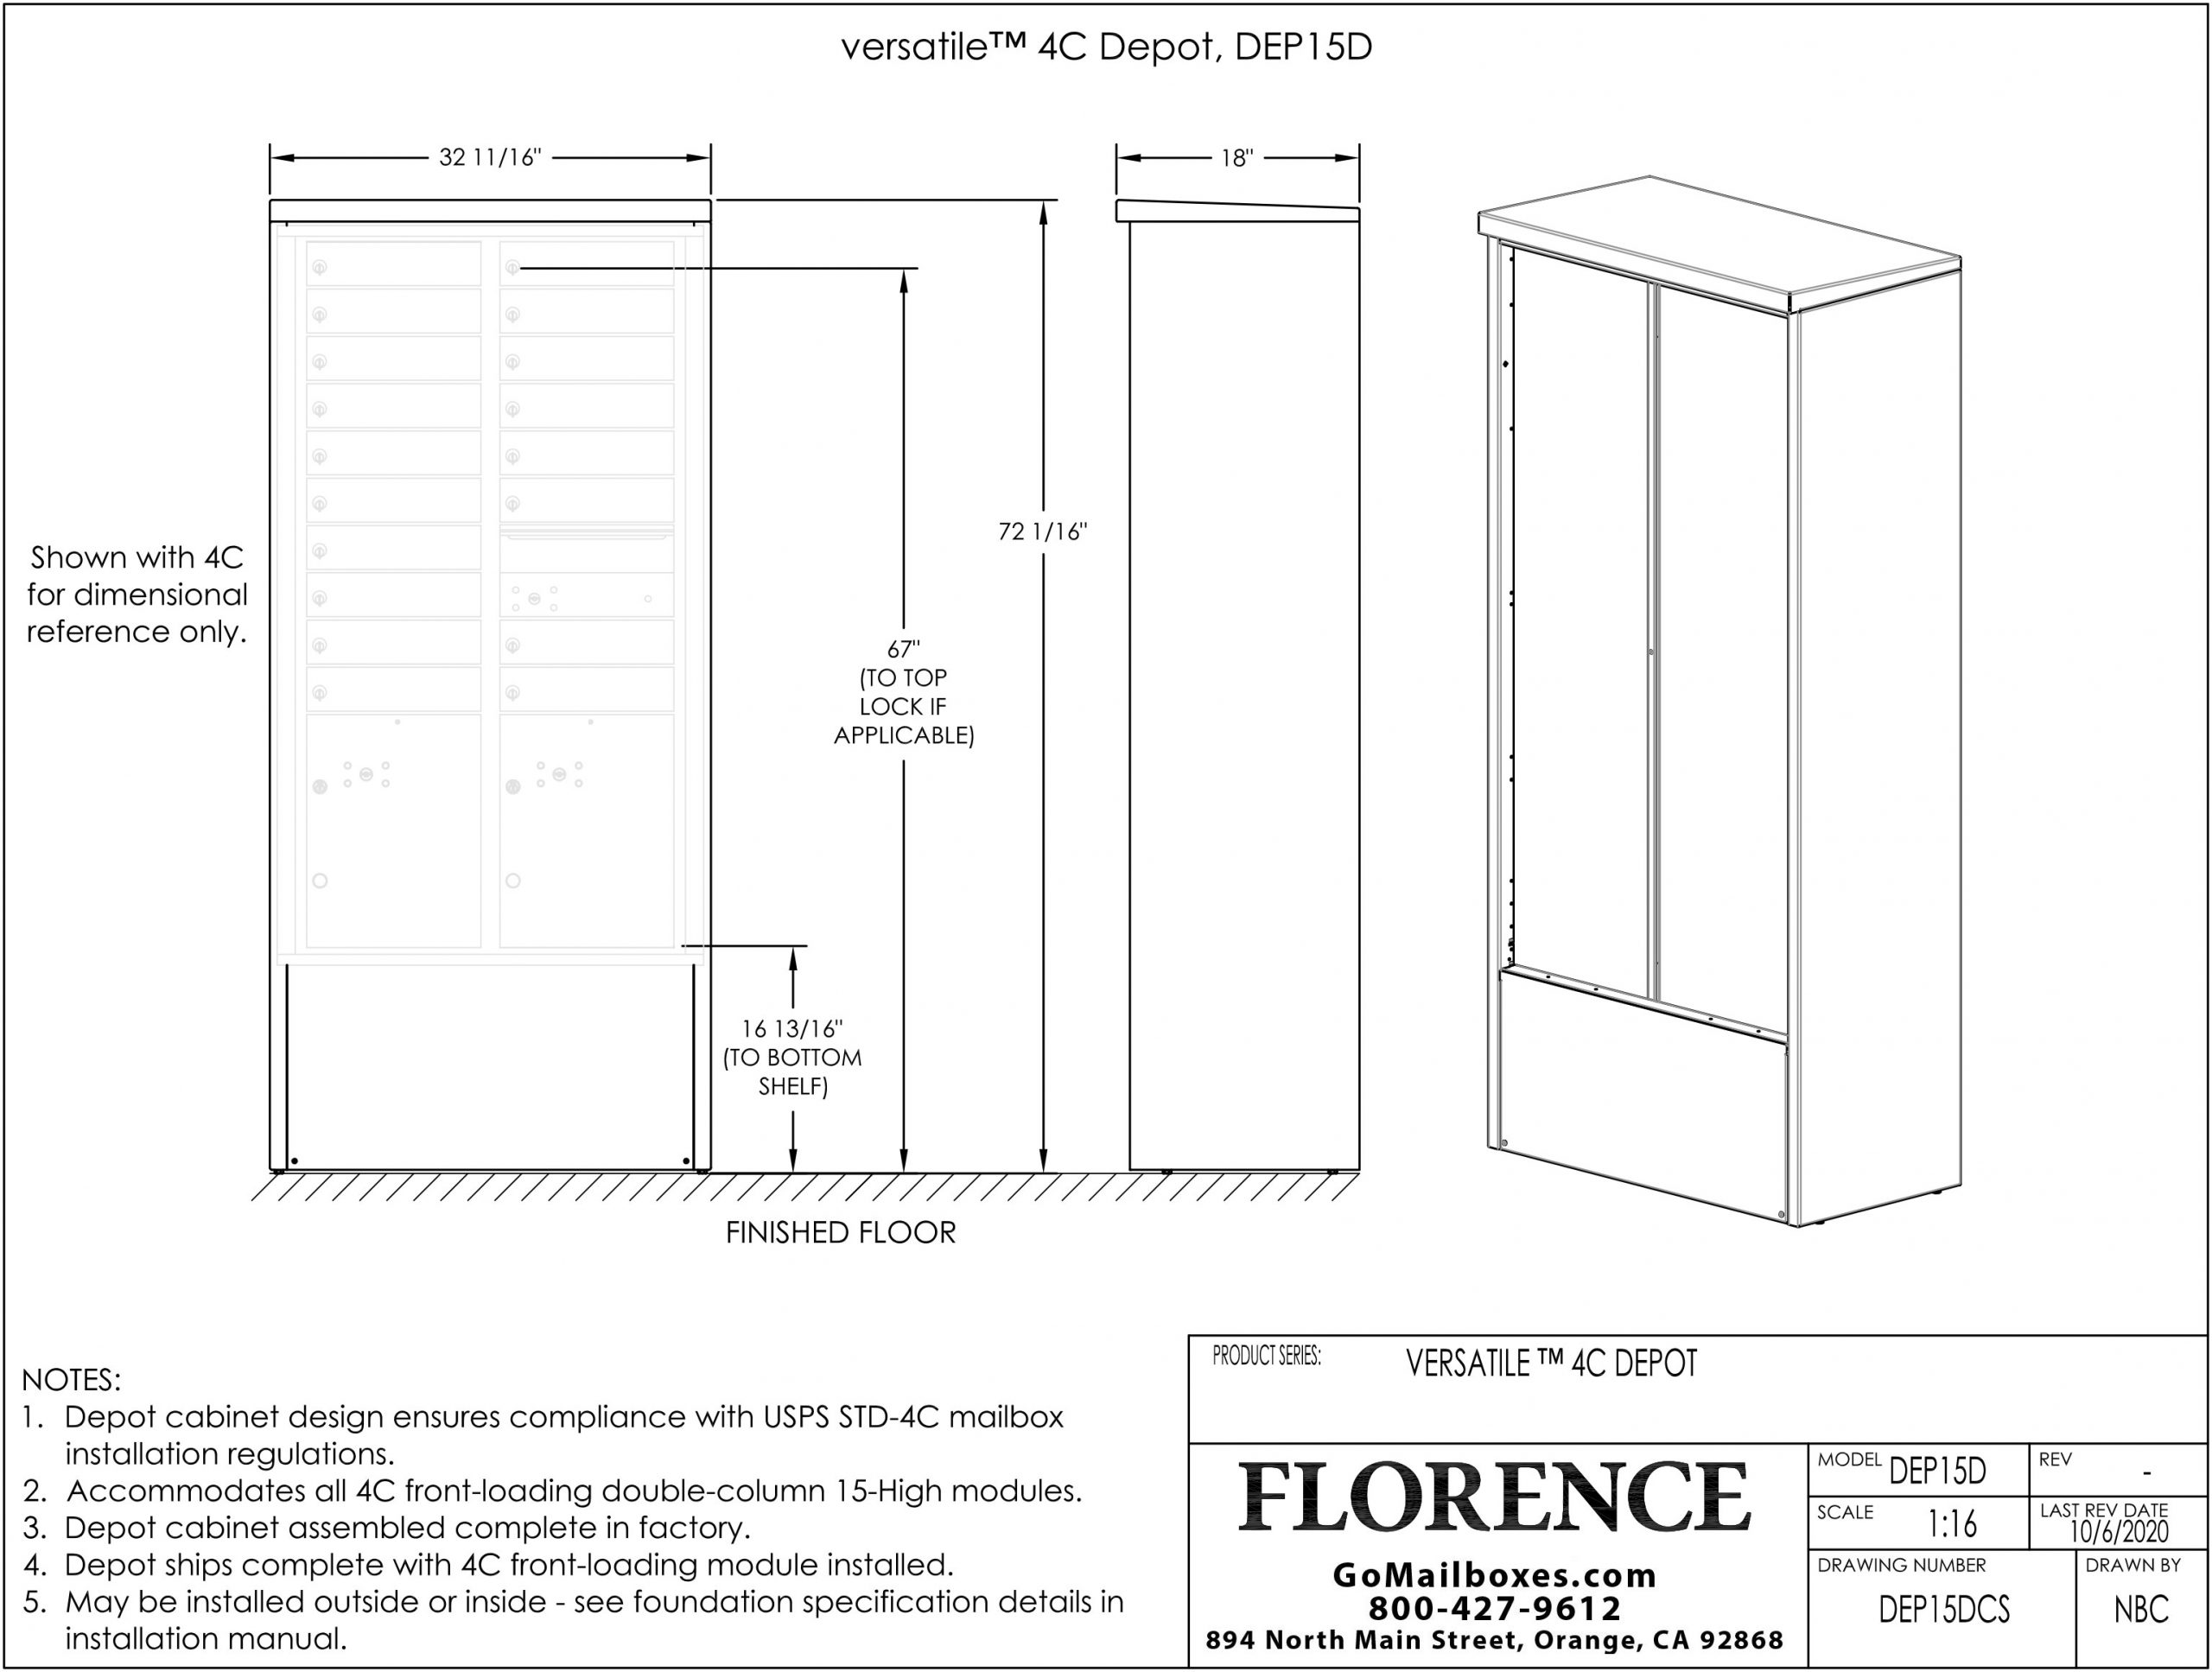 18 Door Depot Cabinet Dimensions